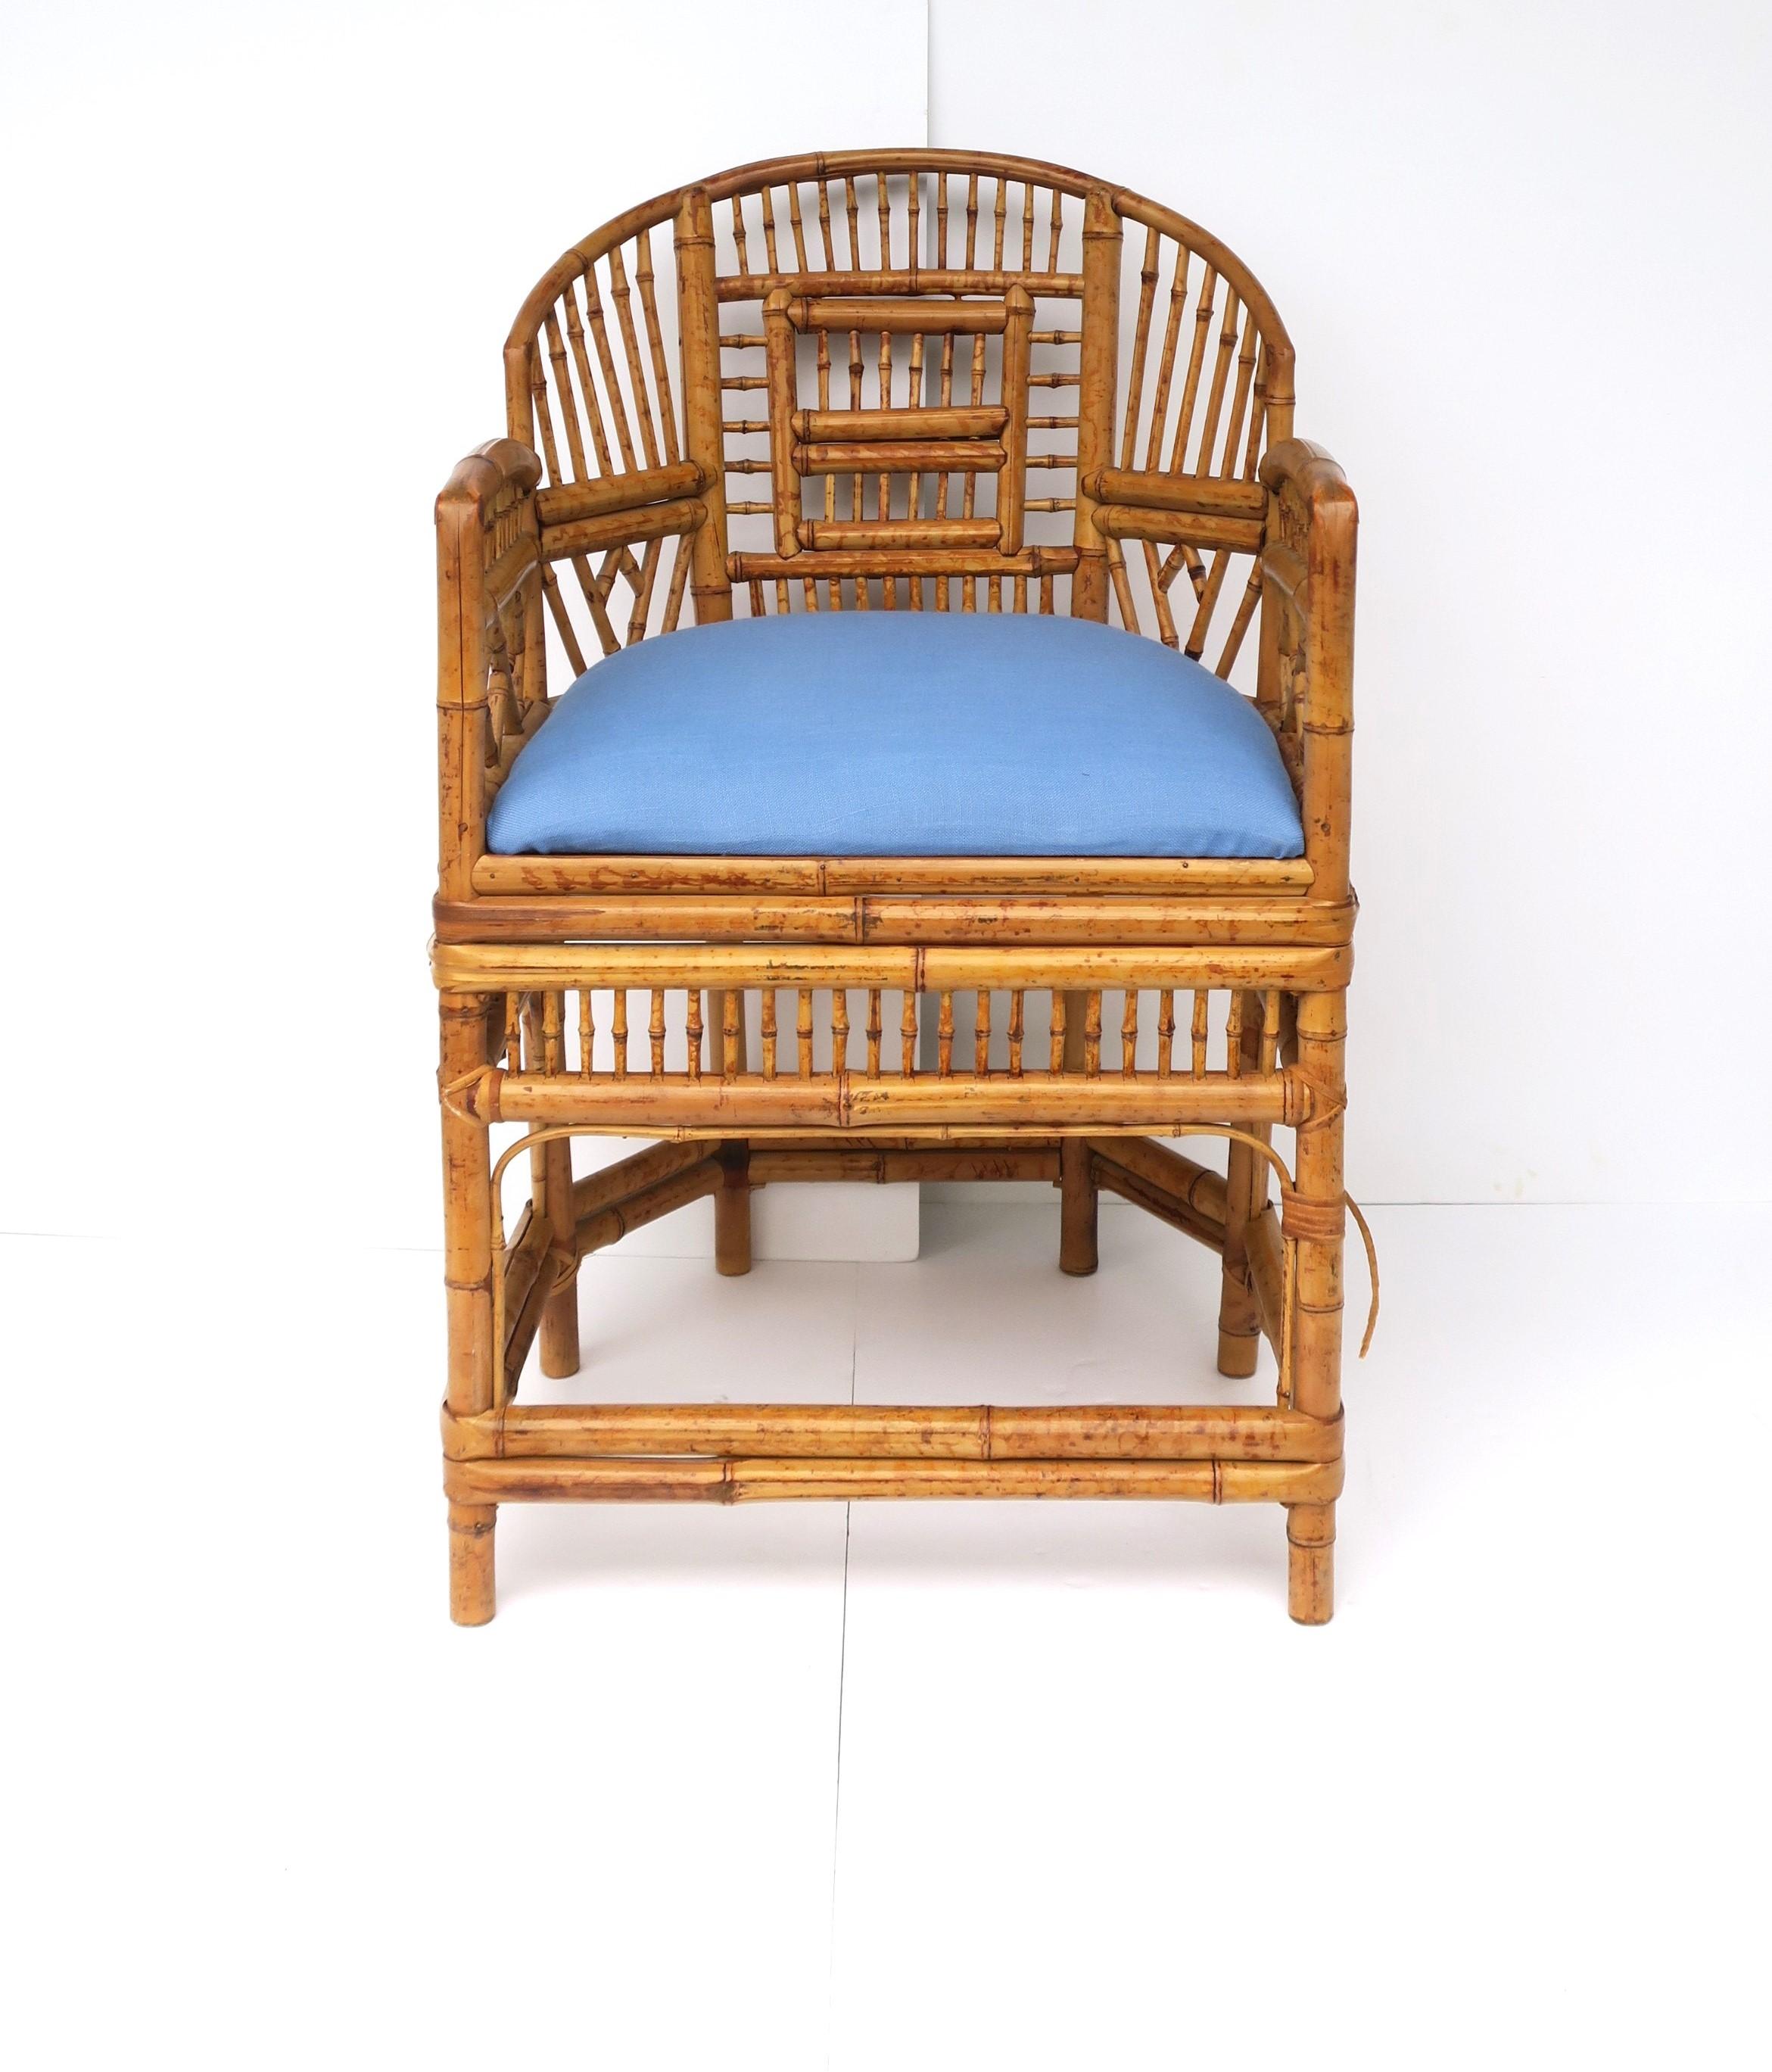 Un beau fauteuil en bambou de bonne facture avec des côtés et un dossier en forme de fuseau et un coussin d'assise rembourré bleu clair, dans le style Chinoiserie, vers le milieu du 20e siècle. Une pièce idéale à ajouter à de nombreux environnements